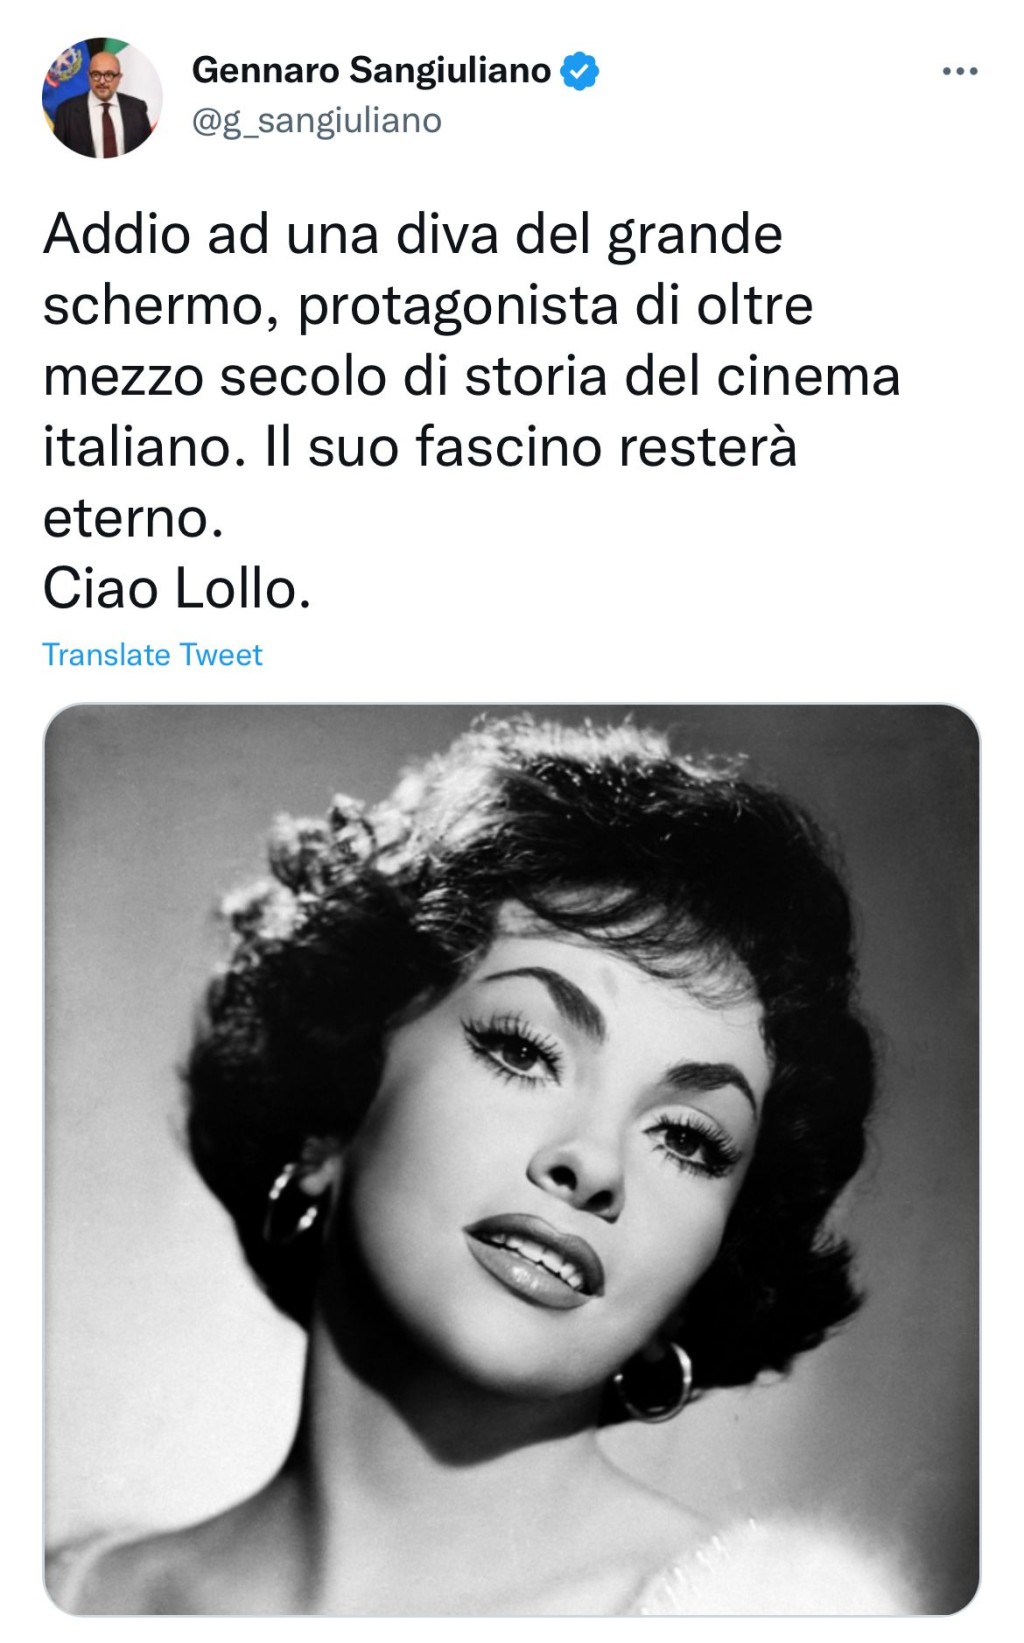 意大利文化部长发文悼念。